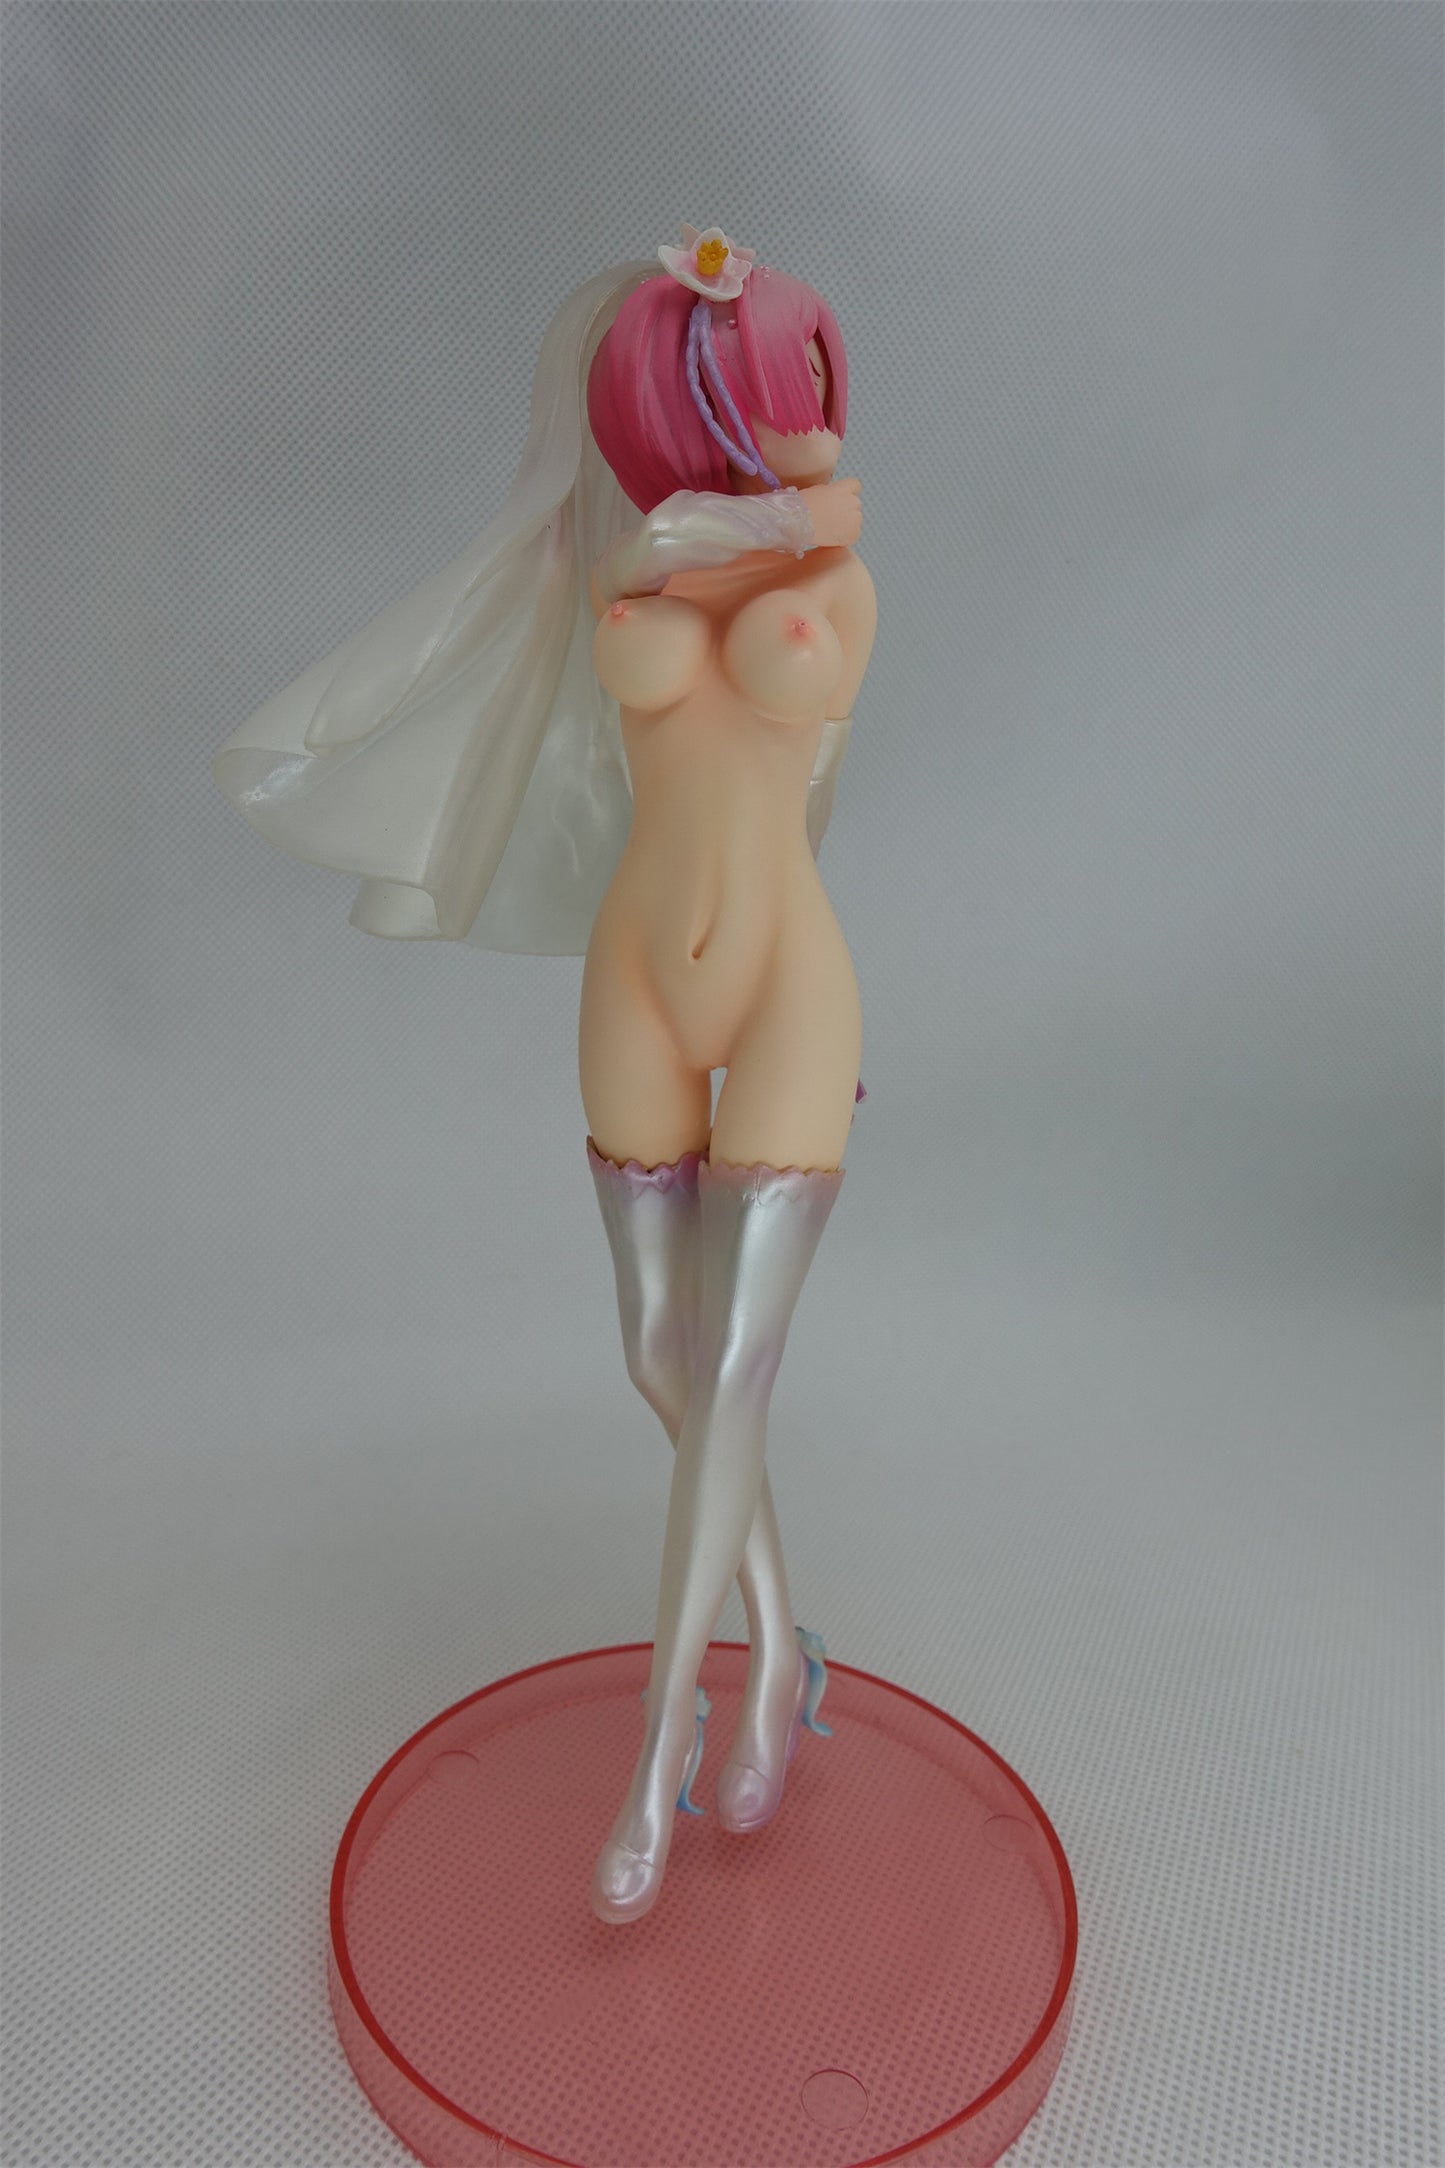 Re:Zero kara Hajimeru Isekai Seikatsu - Rem - 1/6 - Wedding Ver naked anime figure sexy